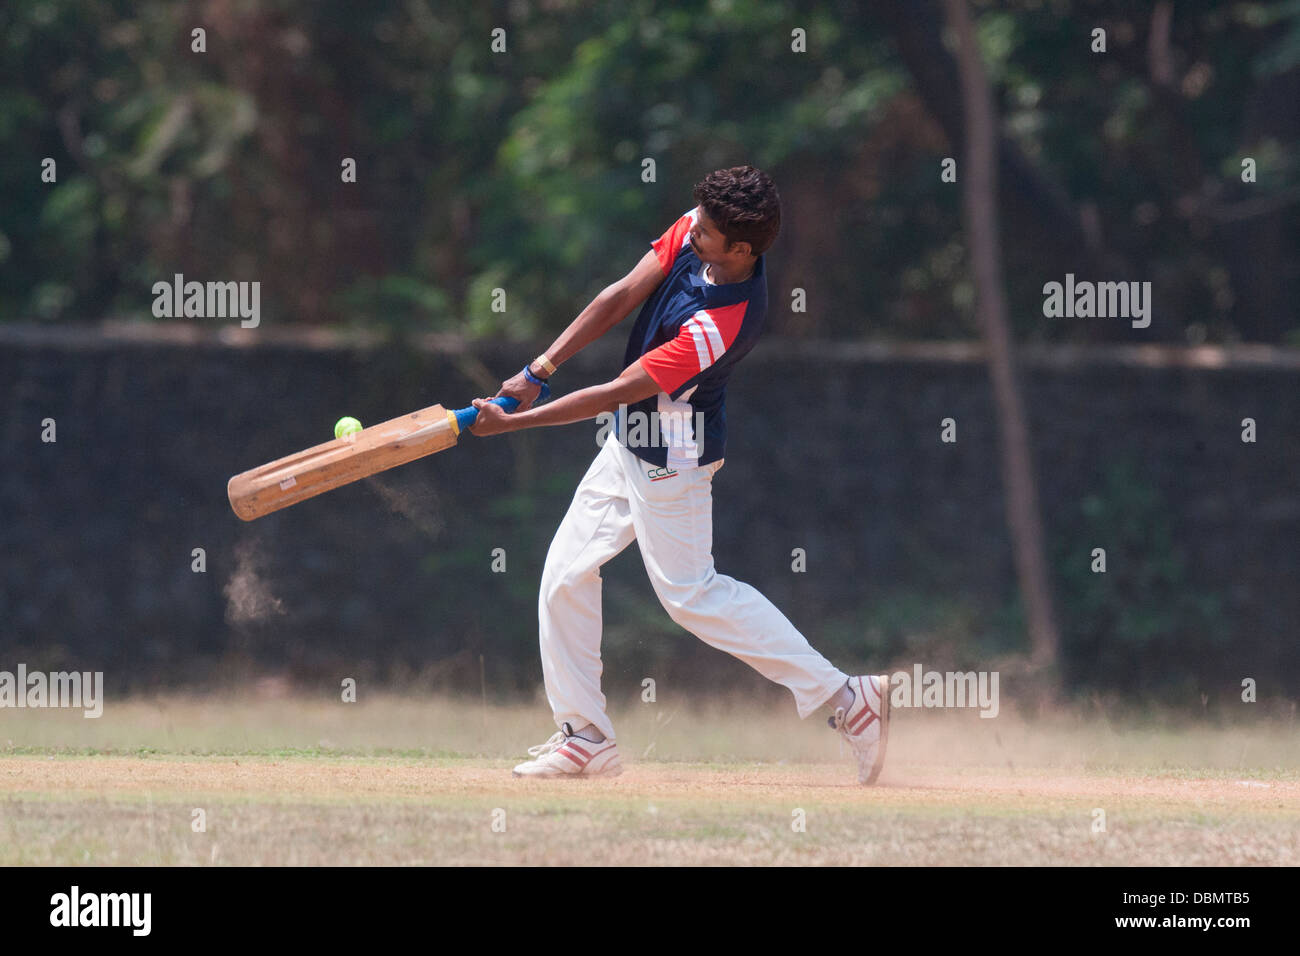 Le cricket est une religion en Inde et vous pouvez voir des gens jouer au cricket presque partout ! Ici, c'est un batteur jouant ses coups . Banque D'Images